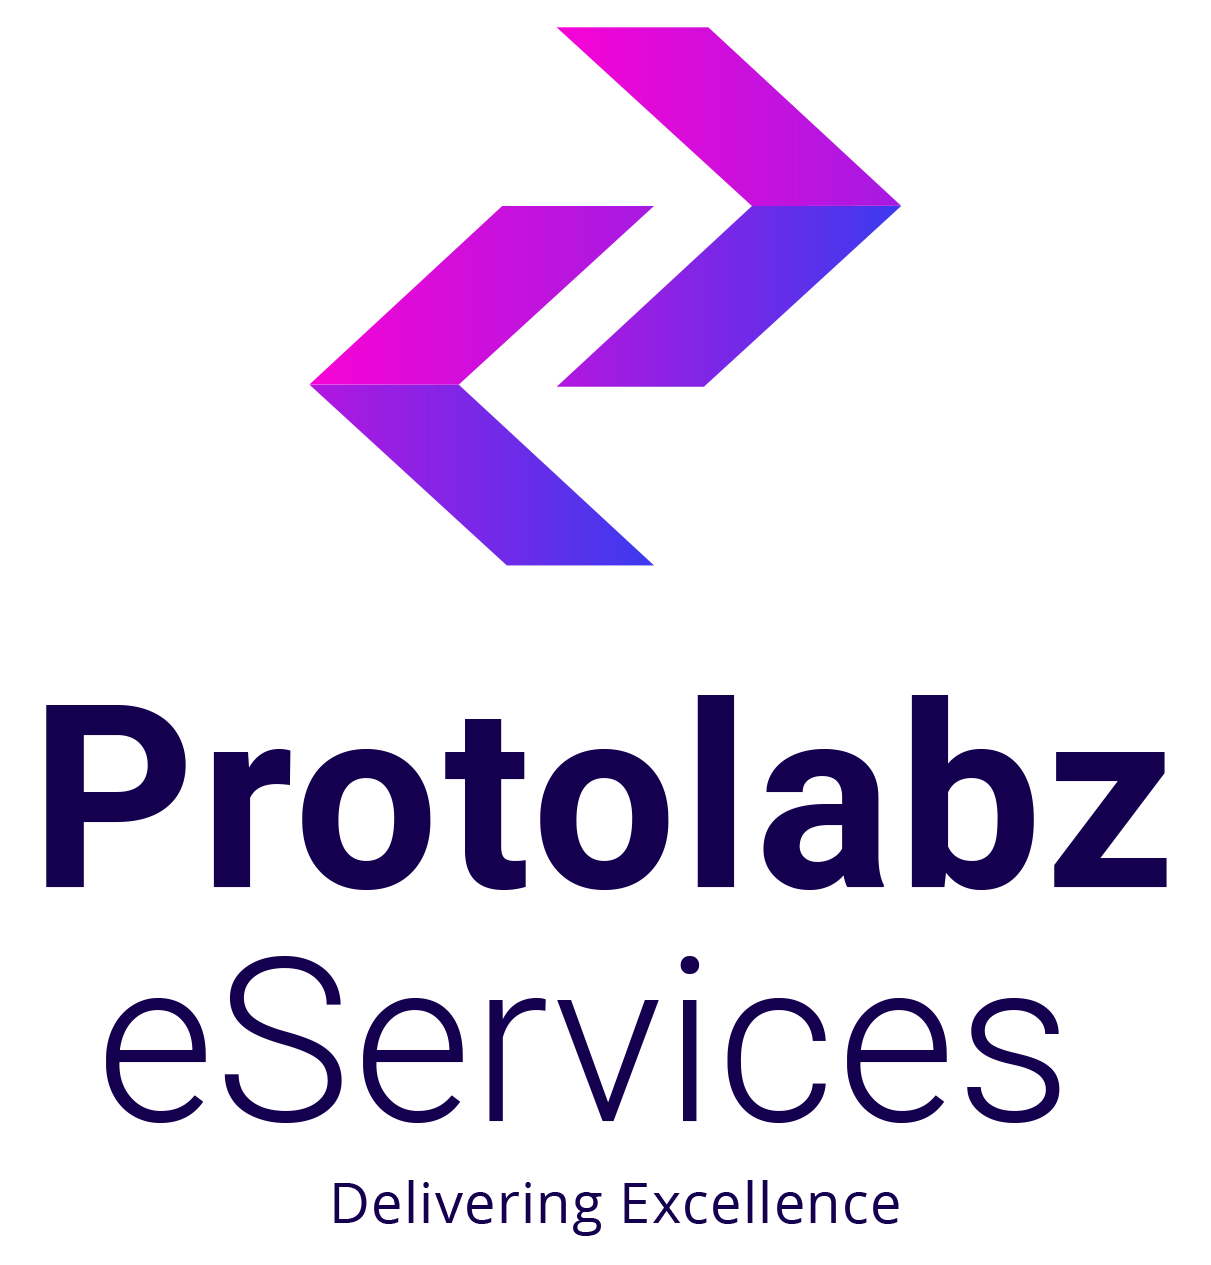 Protolabz eServices|IT Services|Professional Services